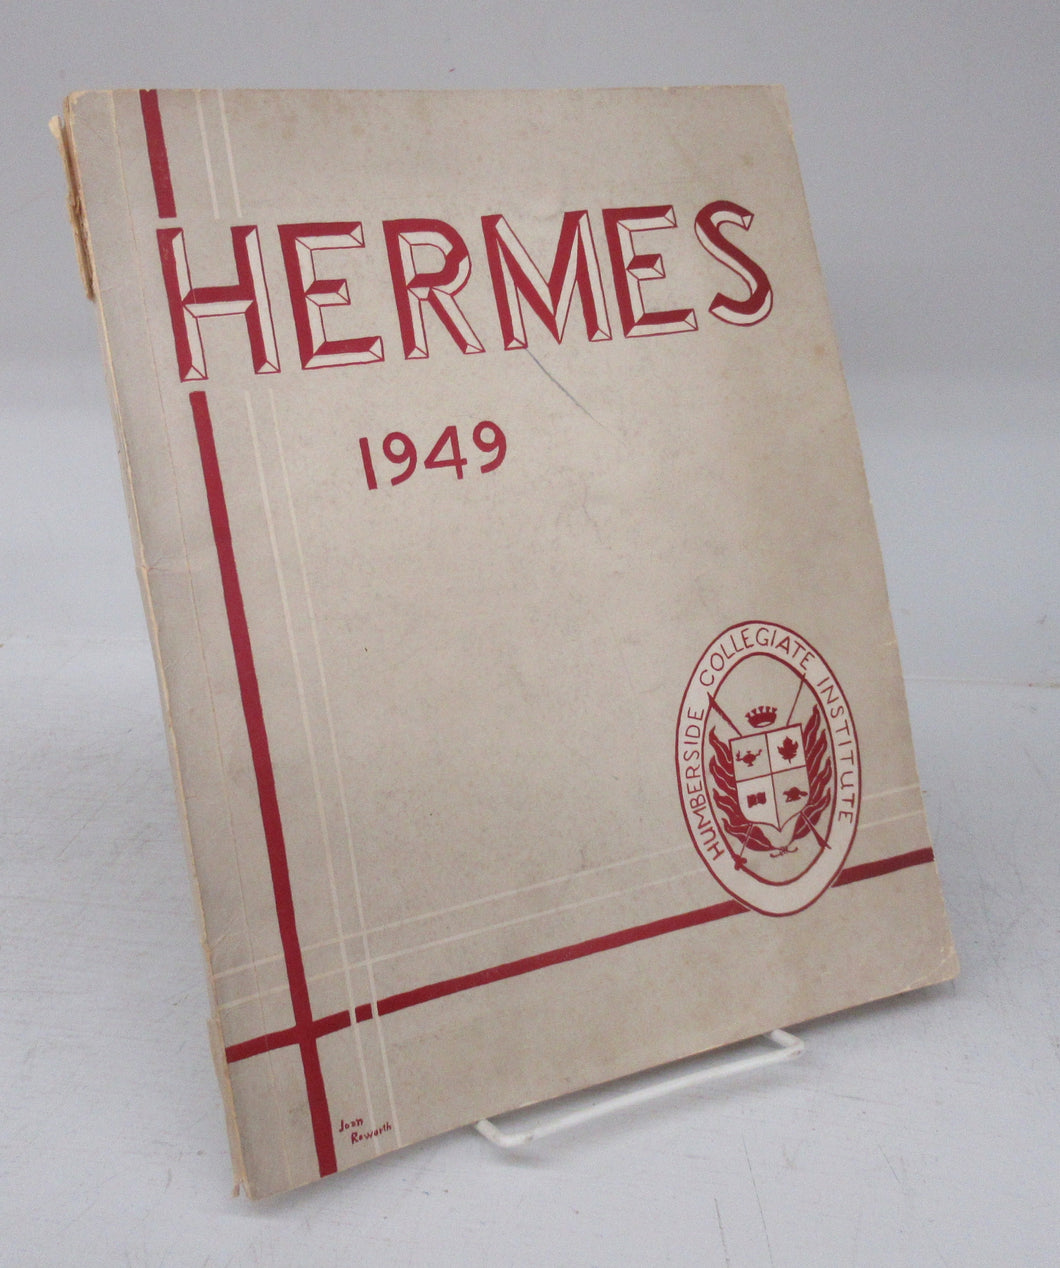  Hermes, 1949